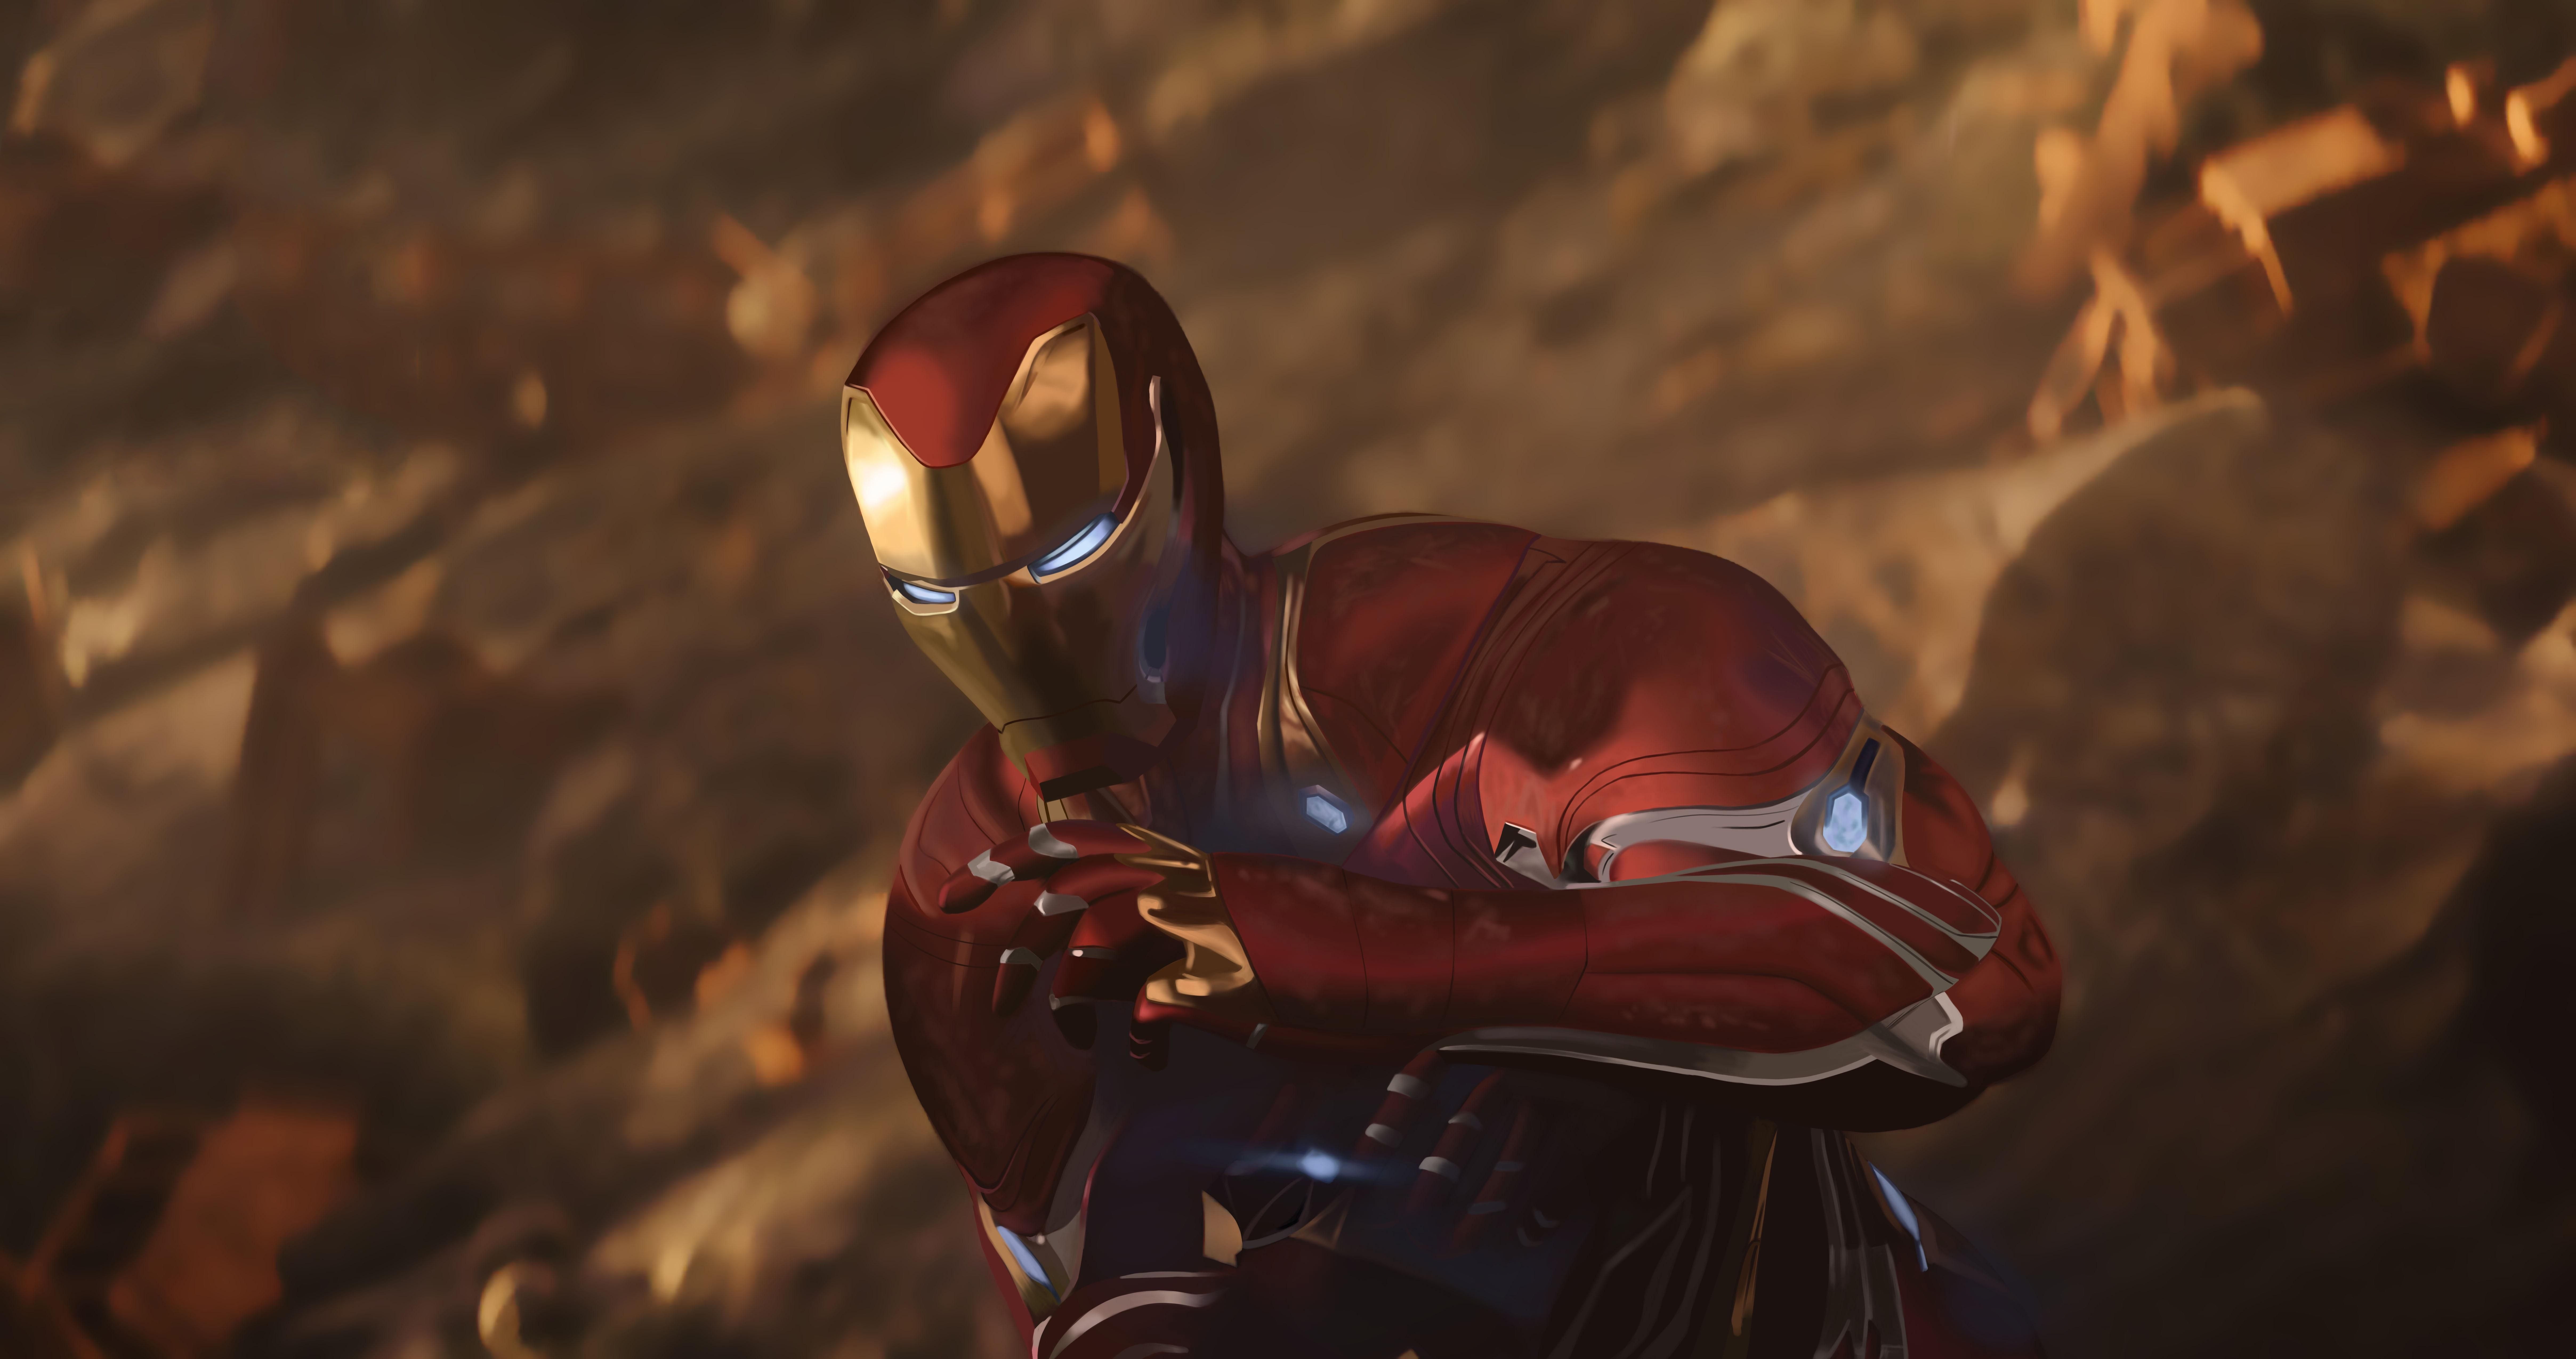 4K K Iron Man Avengers: Infinity War K #wallpaper #hdwallpaper #desktop. Iron man avengers, Iron man, Marvel avengers funny